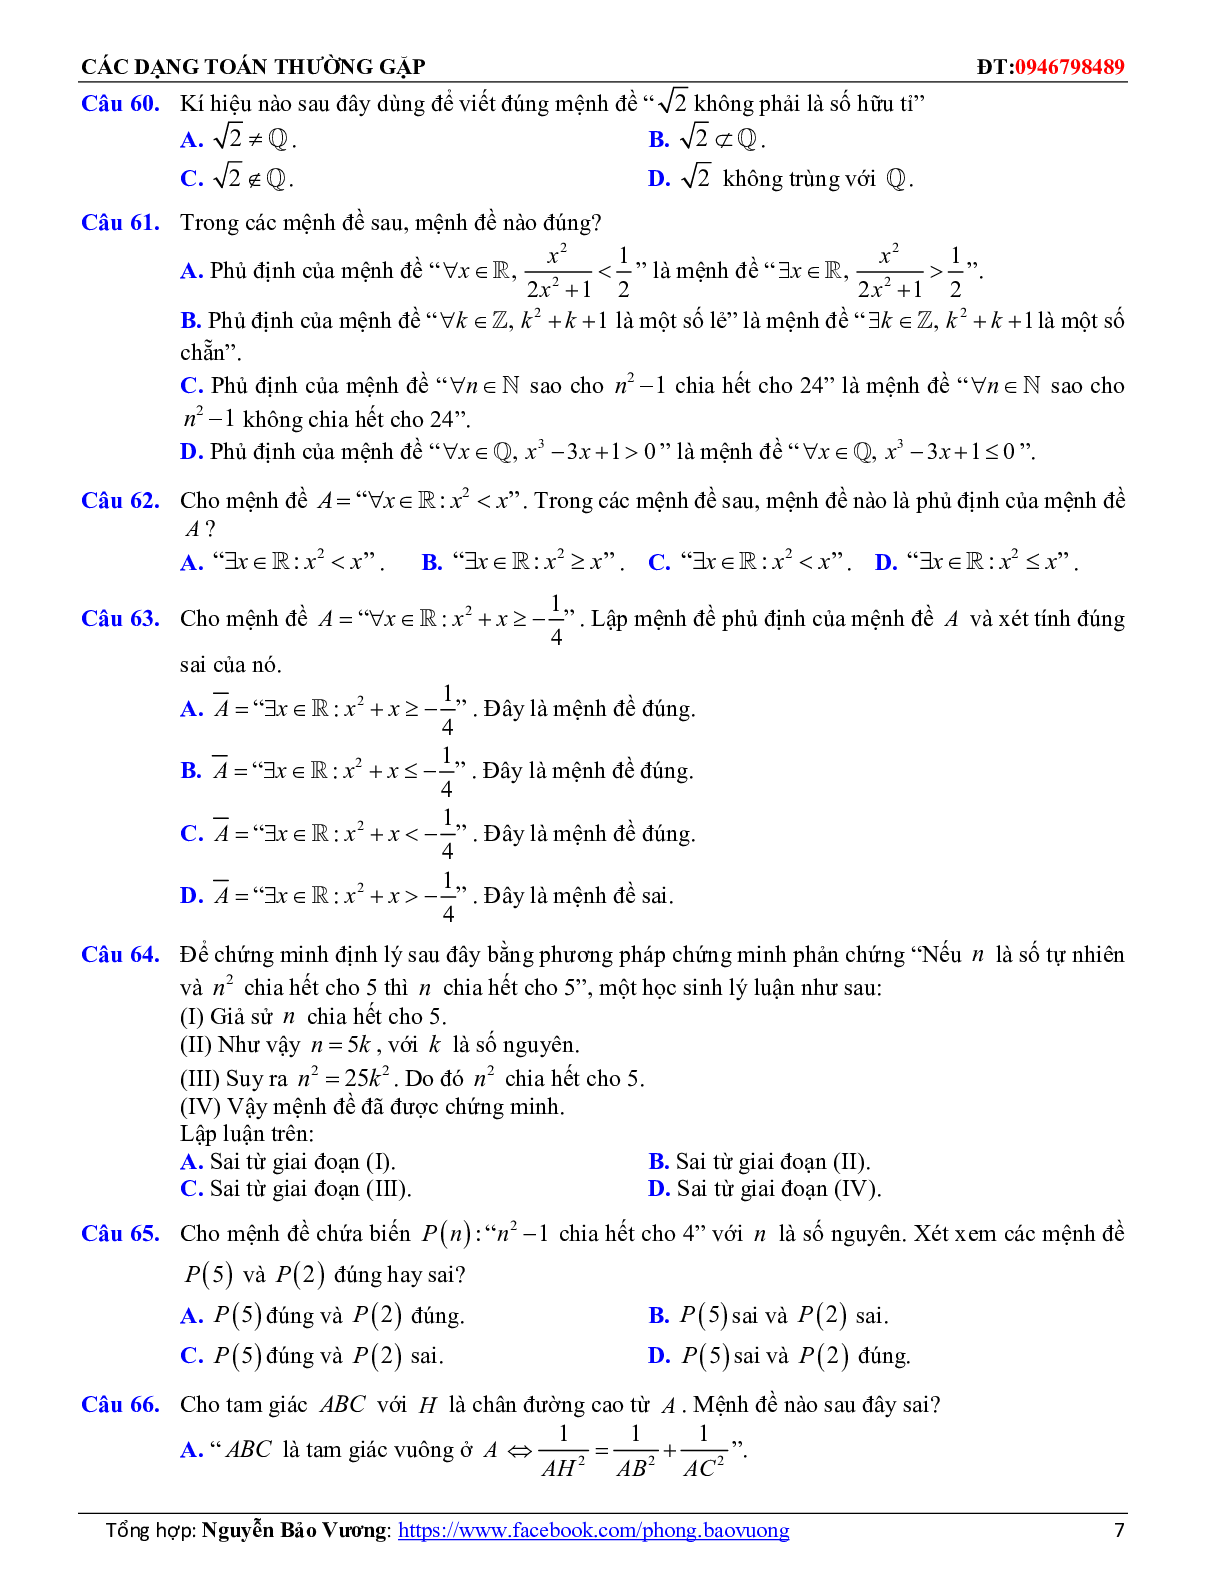 Các dạng toán về mệnh đề và tập hợp thường gặp (trang 7)